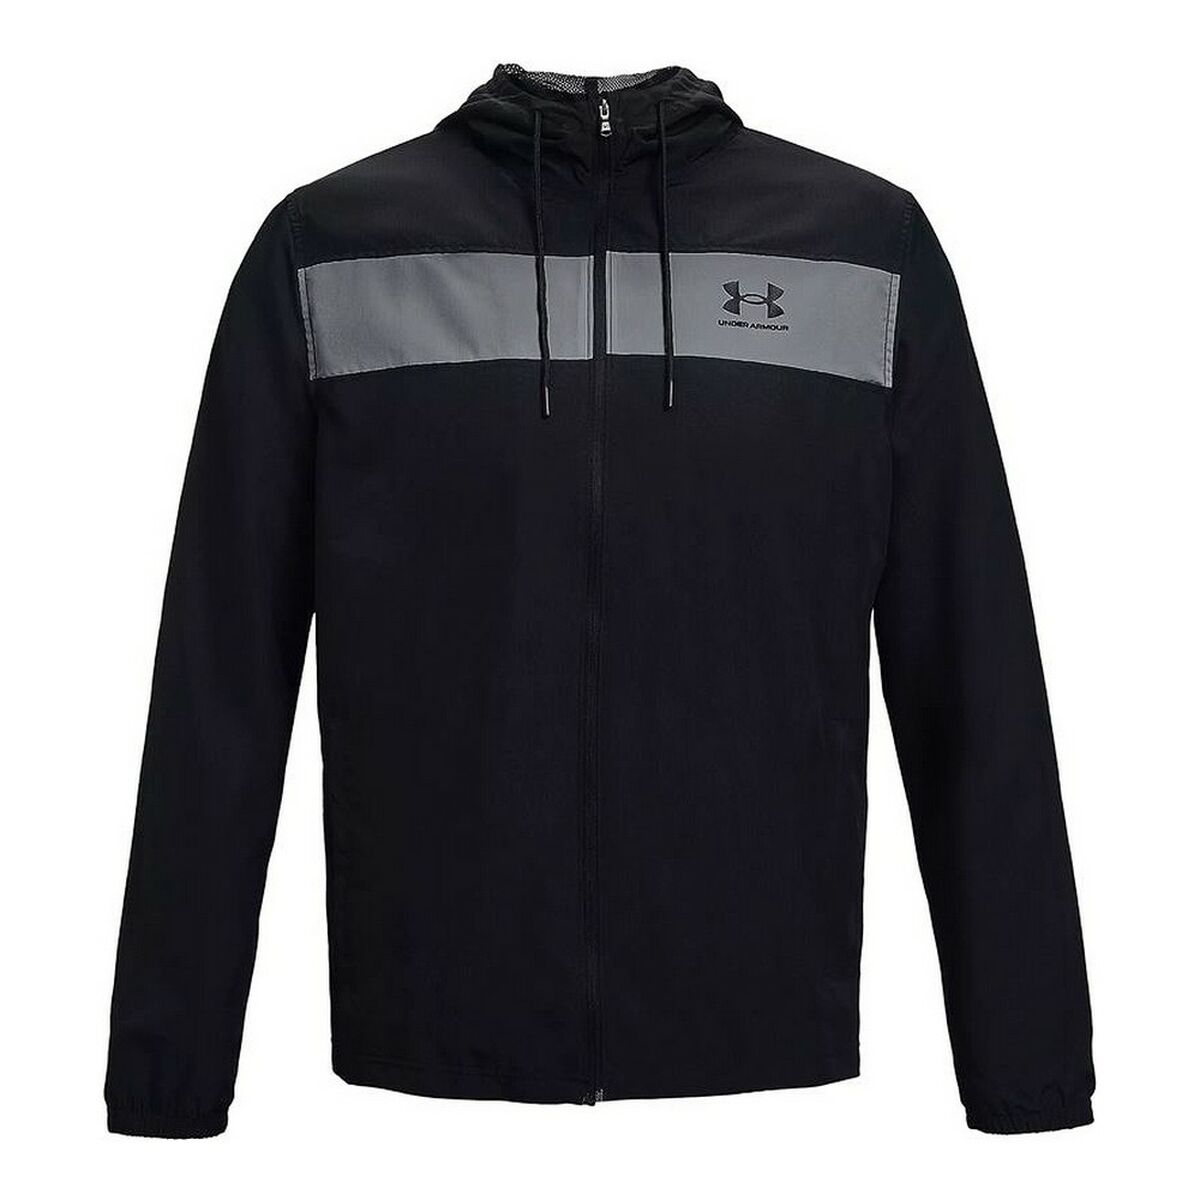 Men's Sports Jacket Under Armour Windbreaker Black L